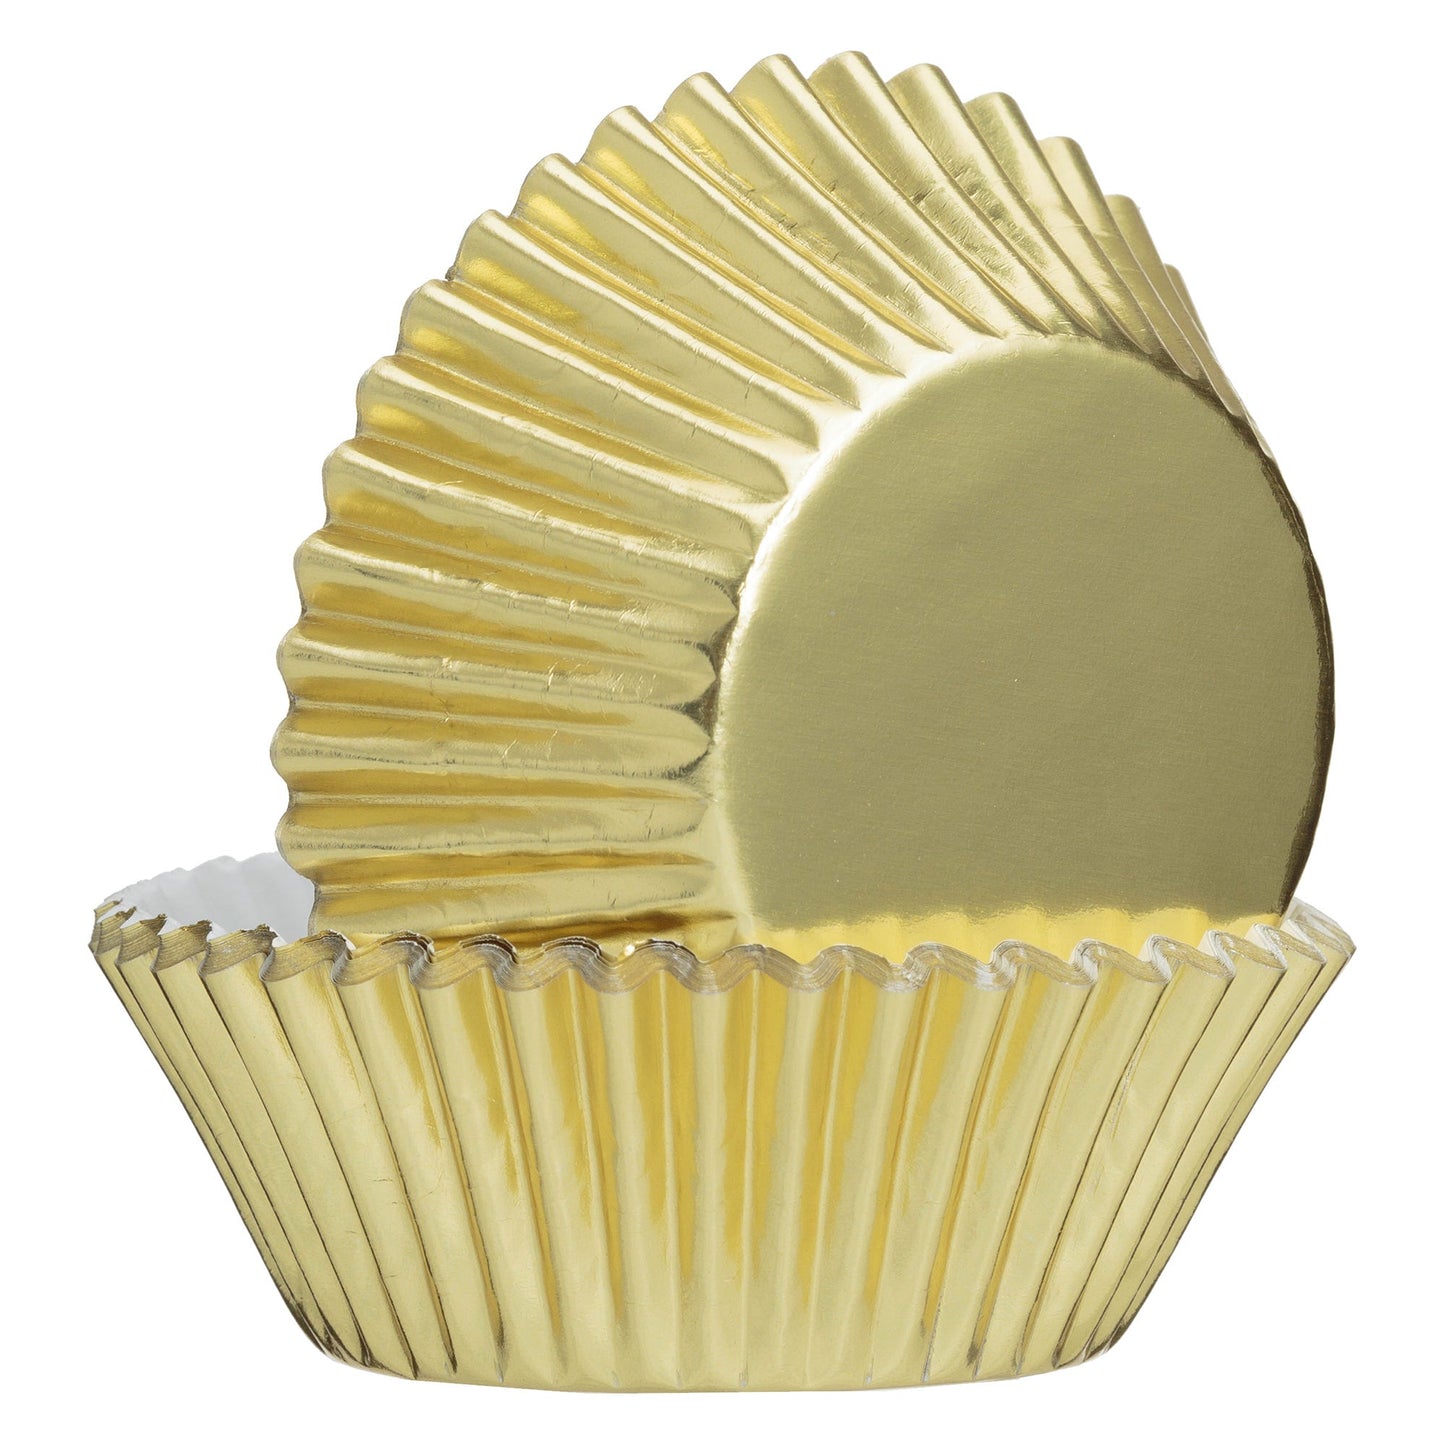 Mason Cash Set of 32 Gold Foil Cupcake Cases